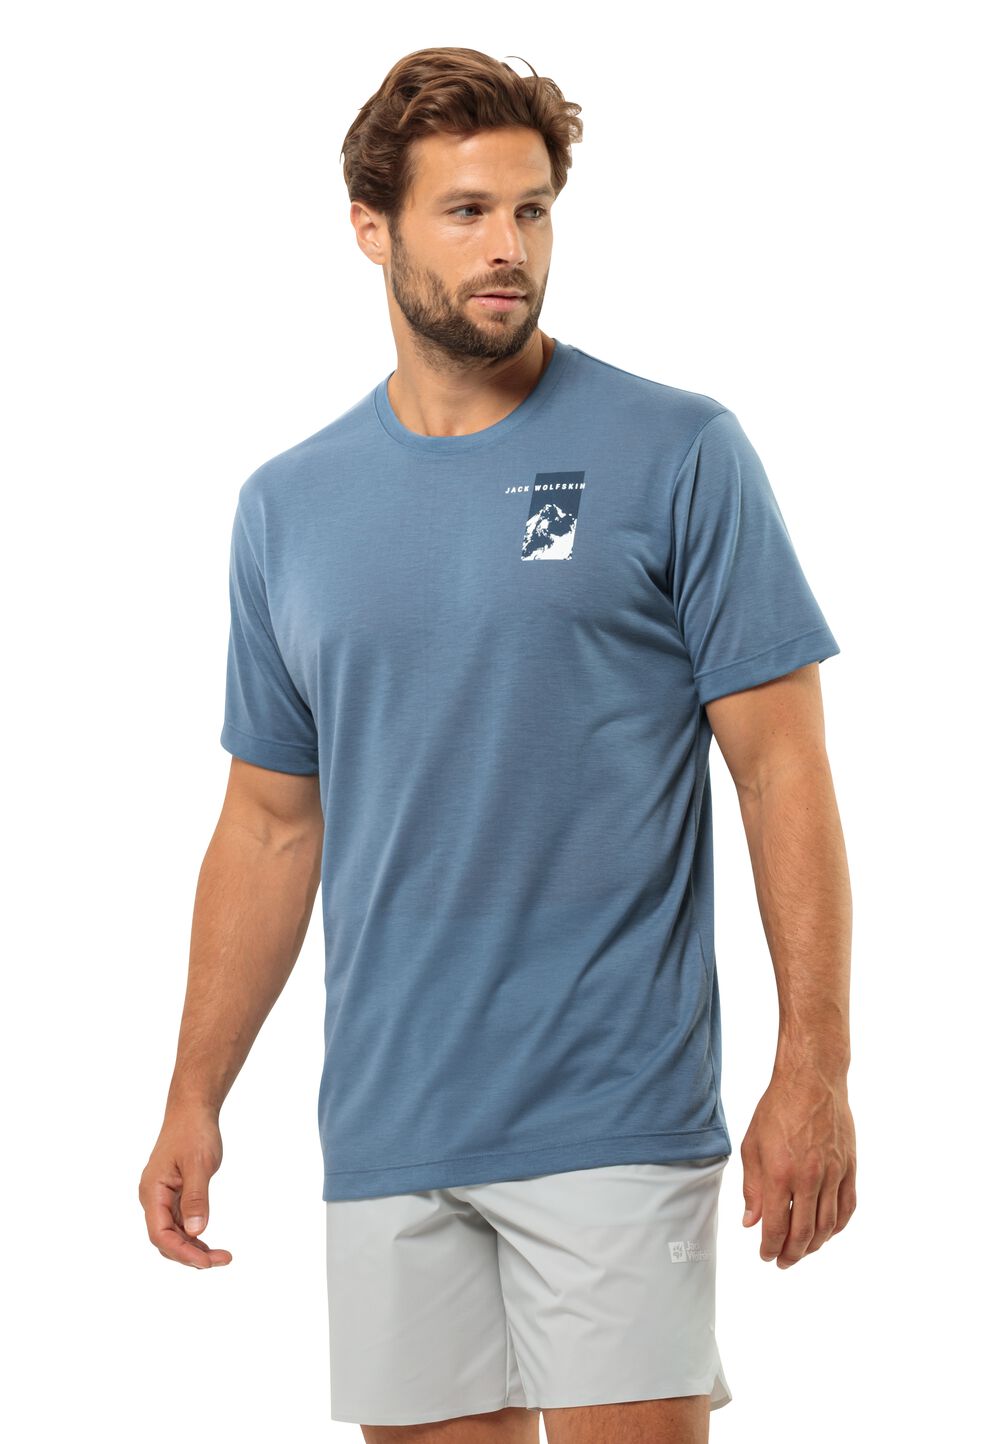 Jack Wolfskin Funktionsshirt Herren Vonnan S/S Graphic T-Shirt Men L elemental blue elemental blue von Jack Wolfskin